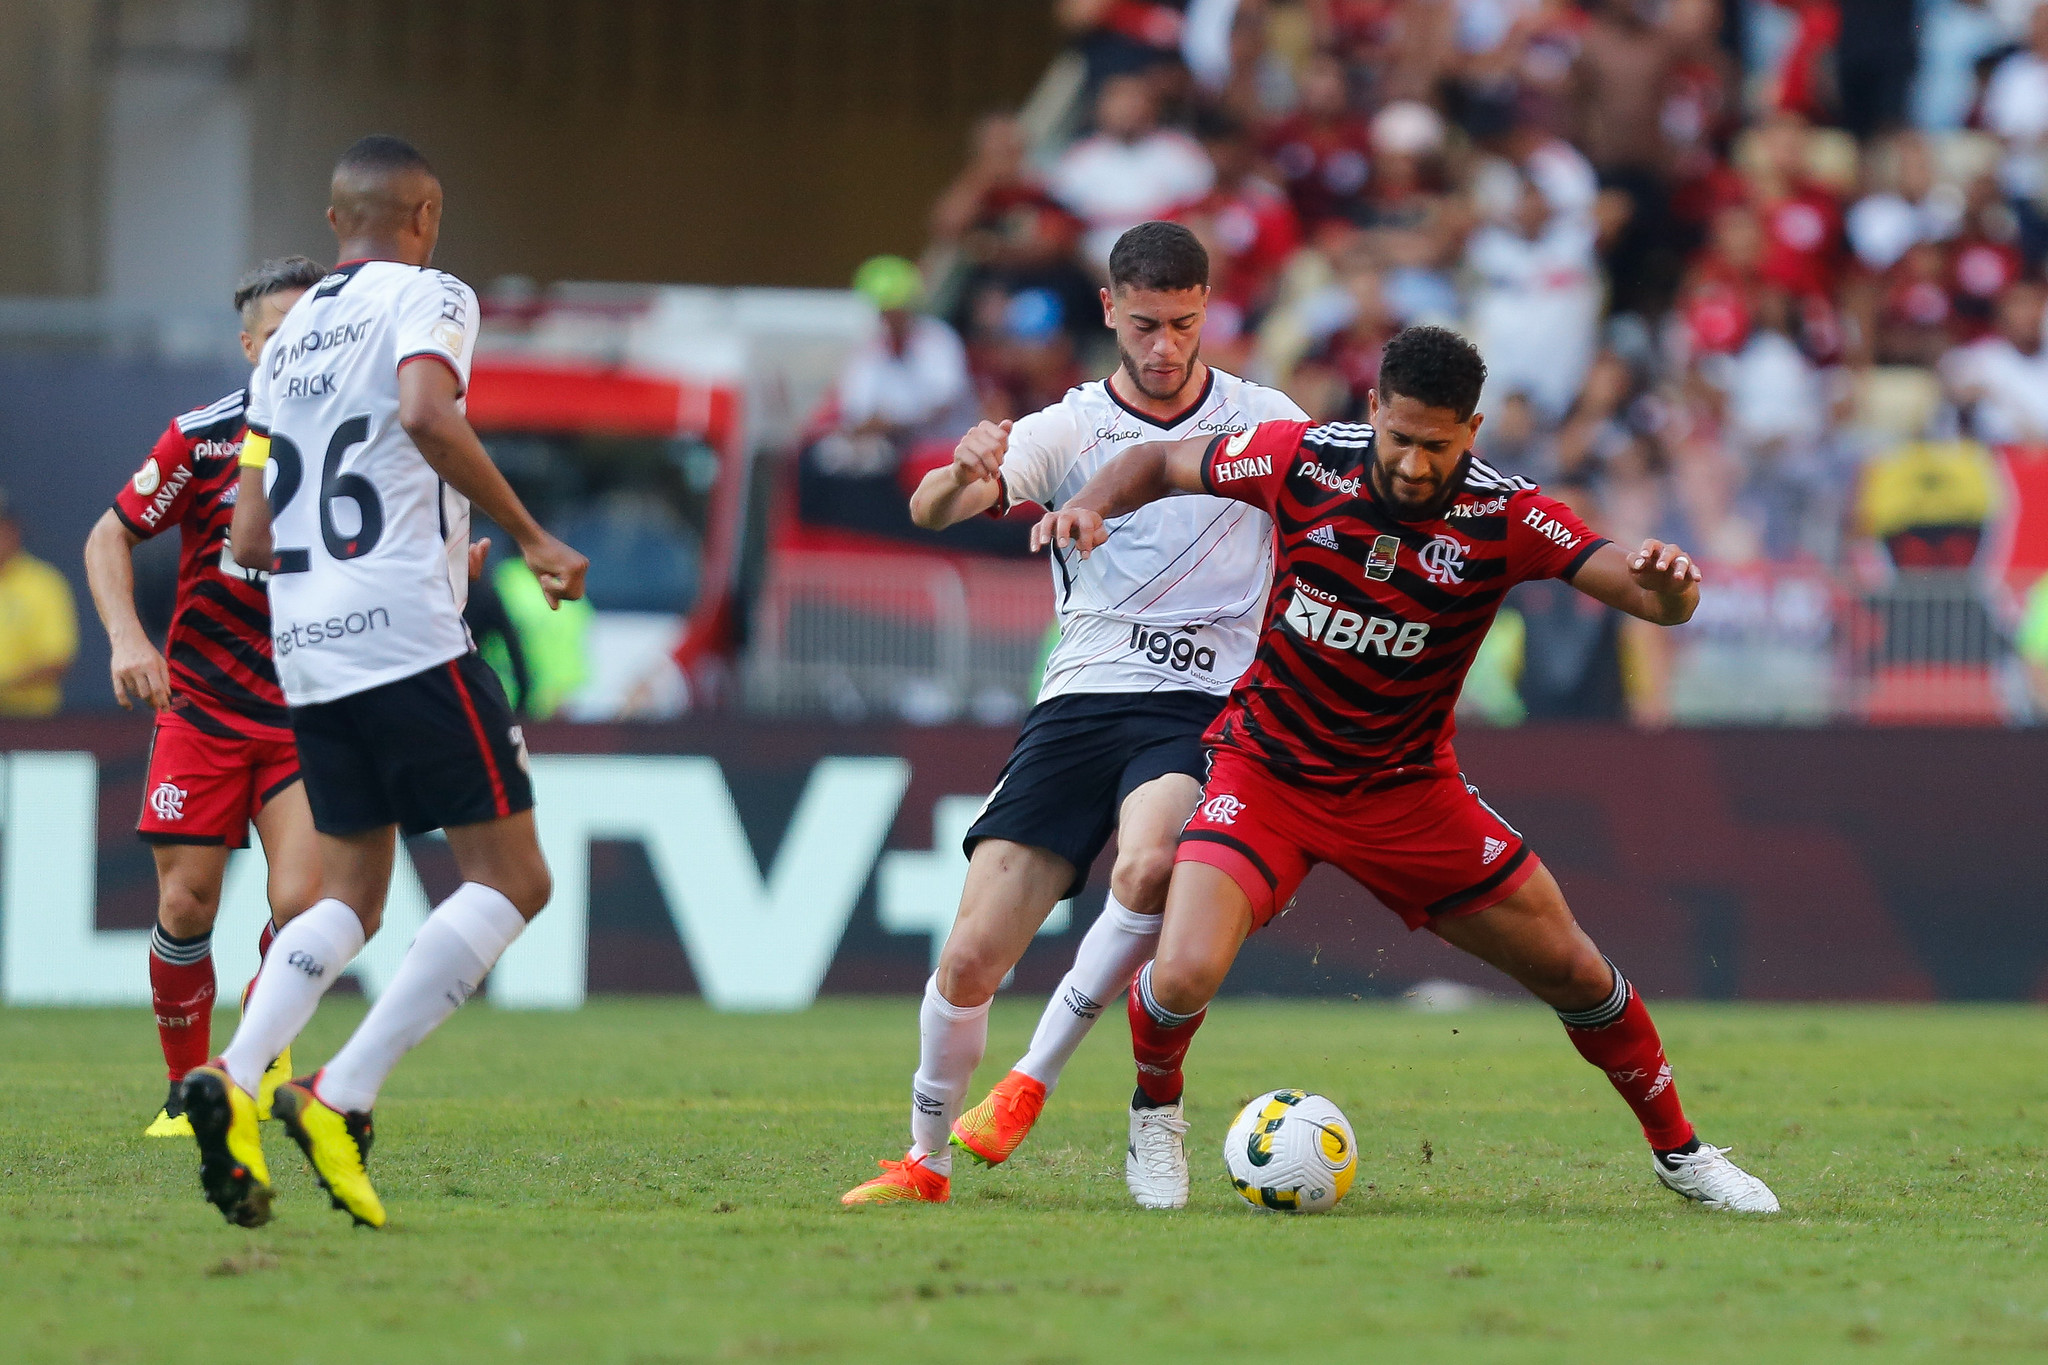 Análise: Em duelo de reservas, Flamengo volta a mostrar força do elenco e bate o Athletico